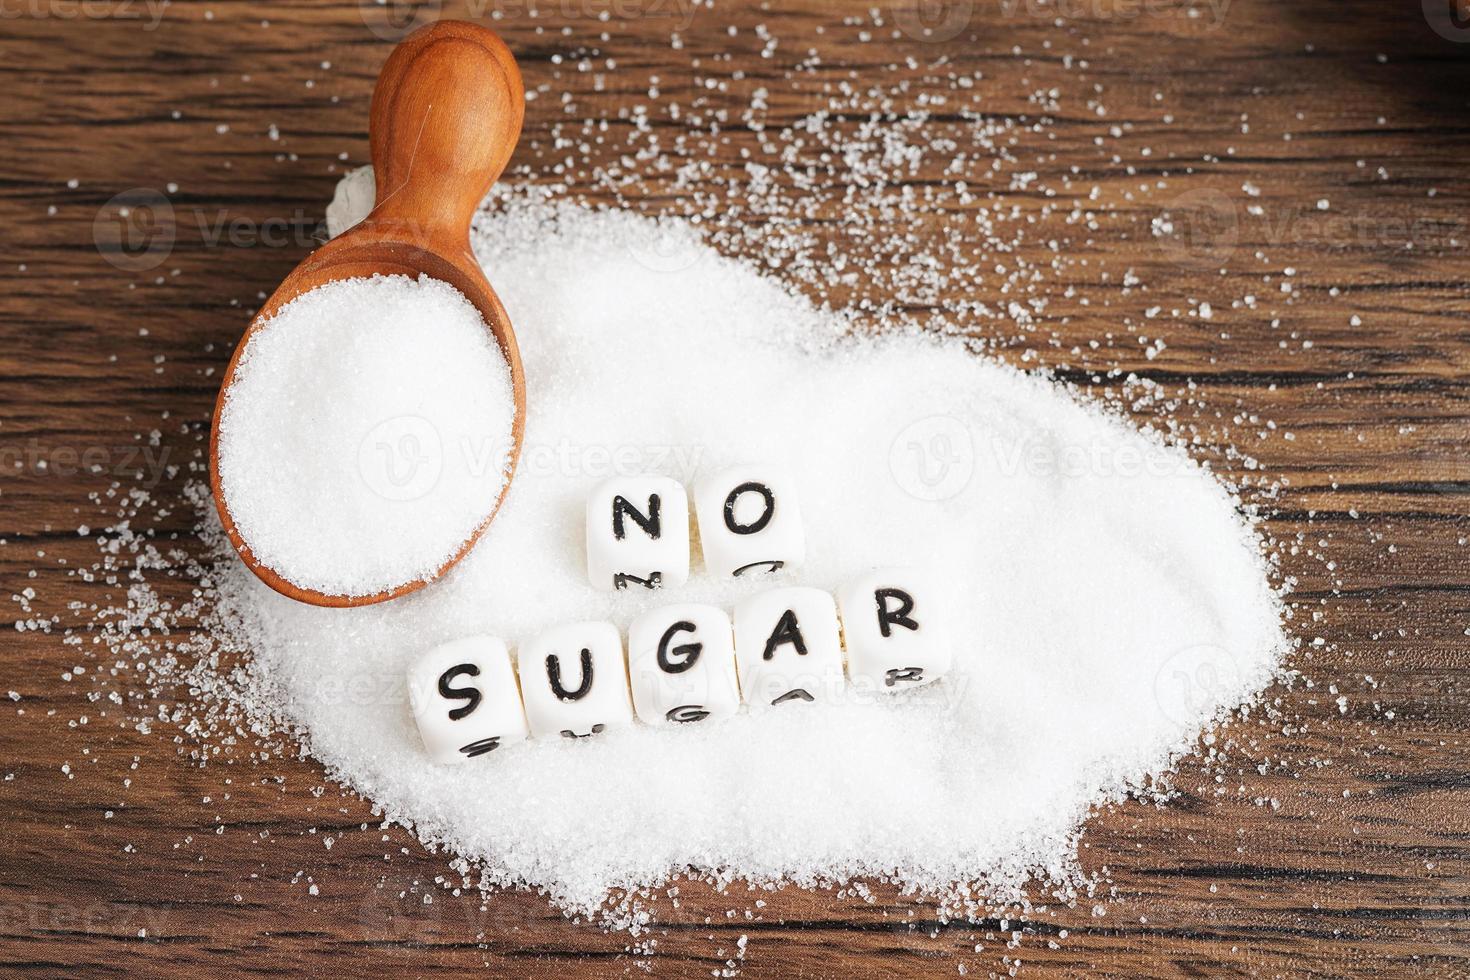 sem açúcar, açúcar granulado doce com texto, prevenção de diabetes, dieta e perda de peso para uma boa saúde. foto